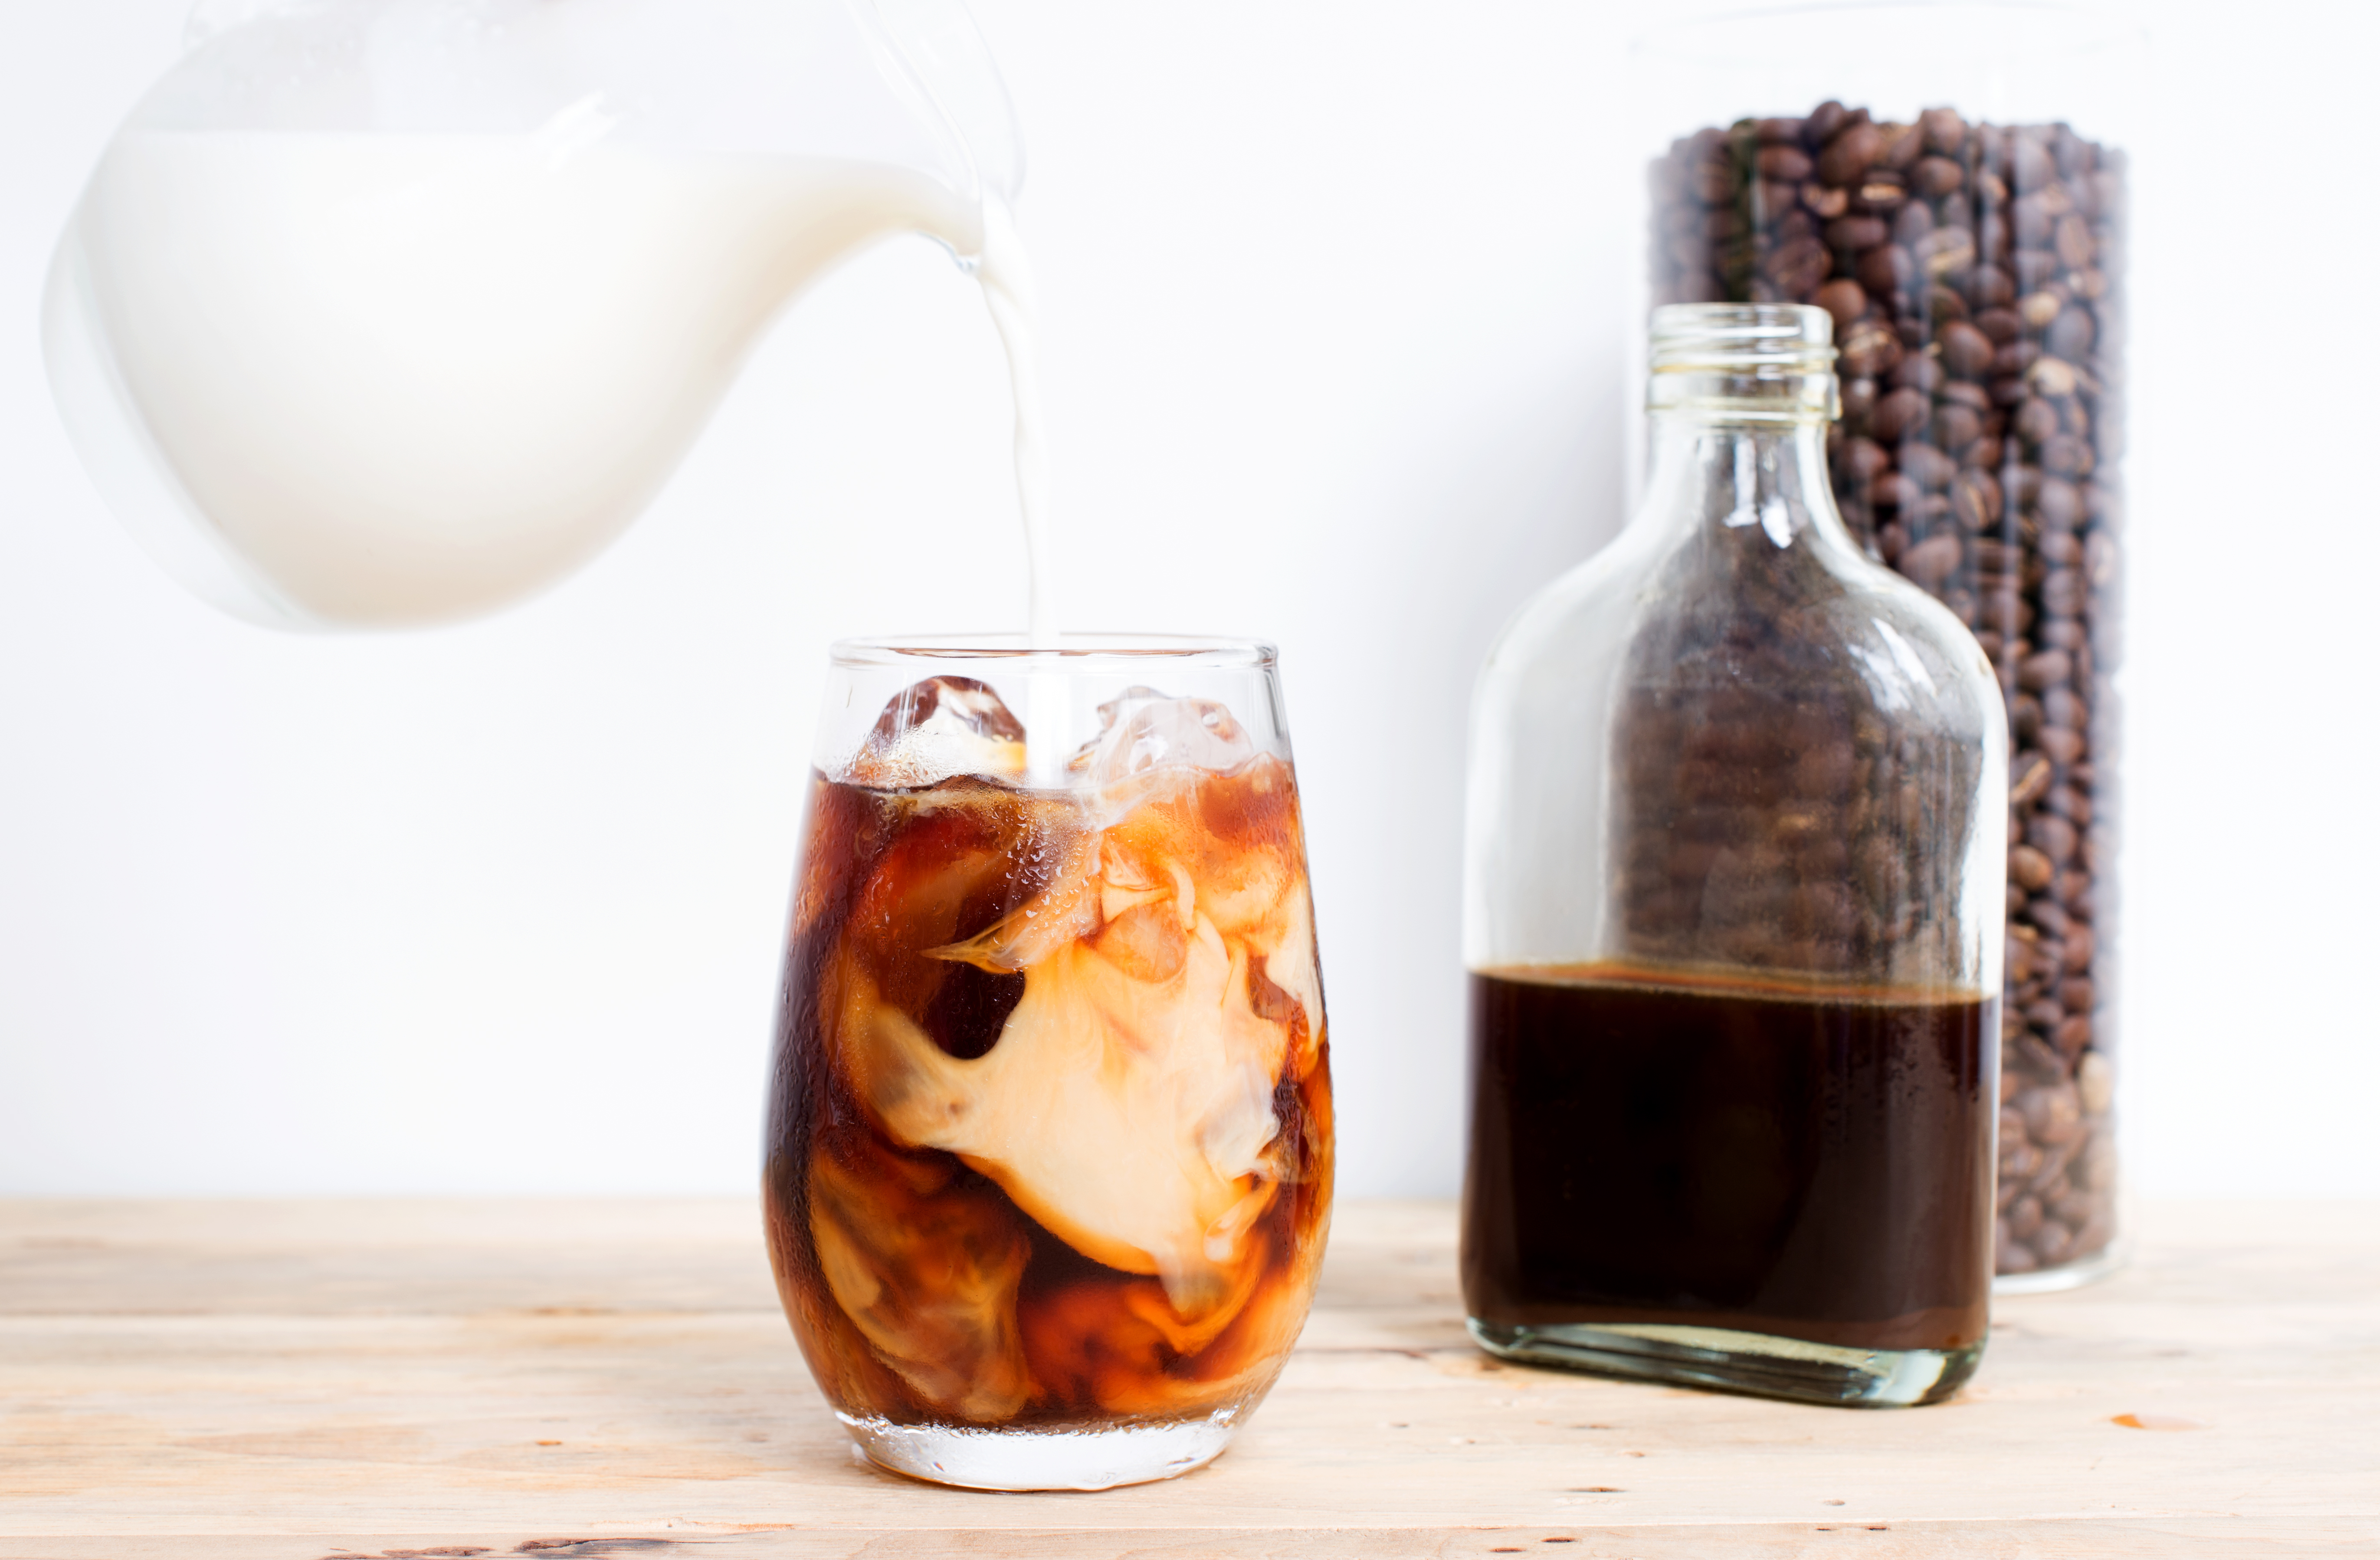 מה בריא יותר: קפה קר ברו או קפה שחור רגיל?